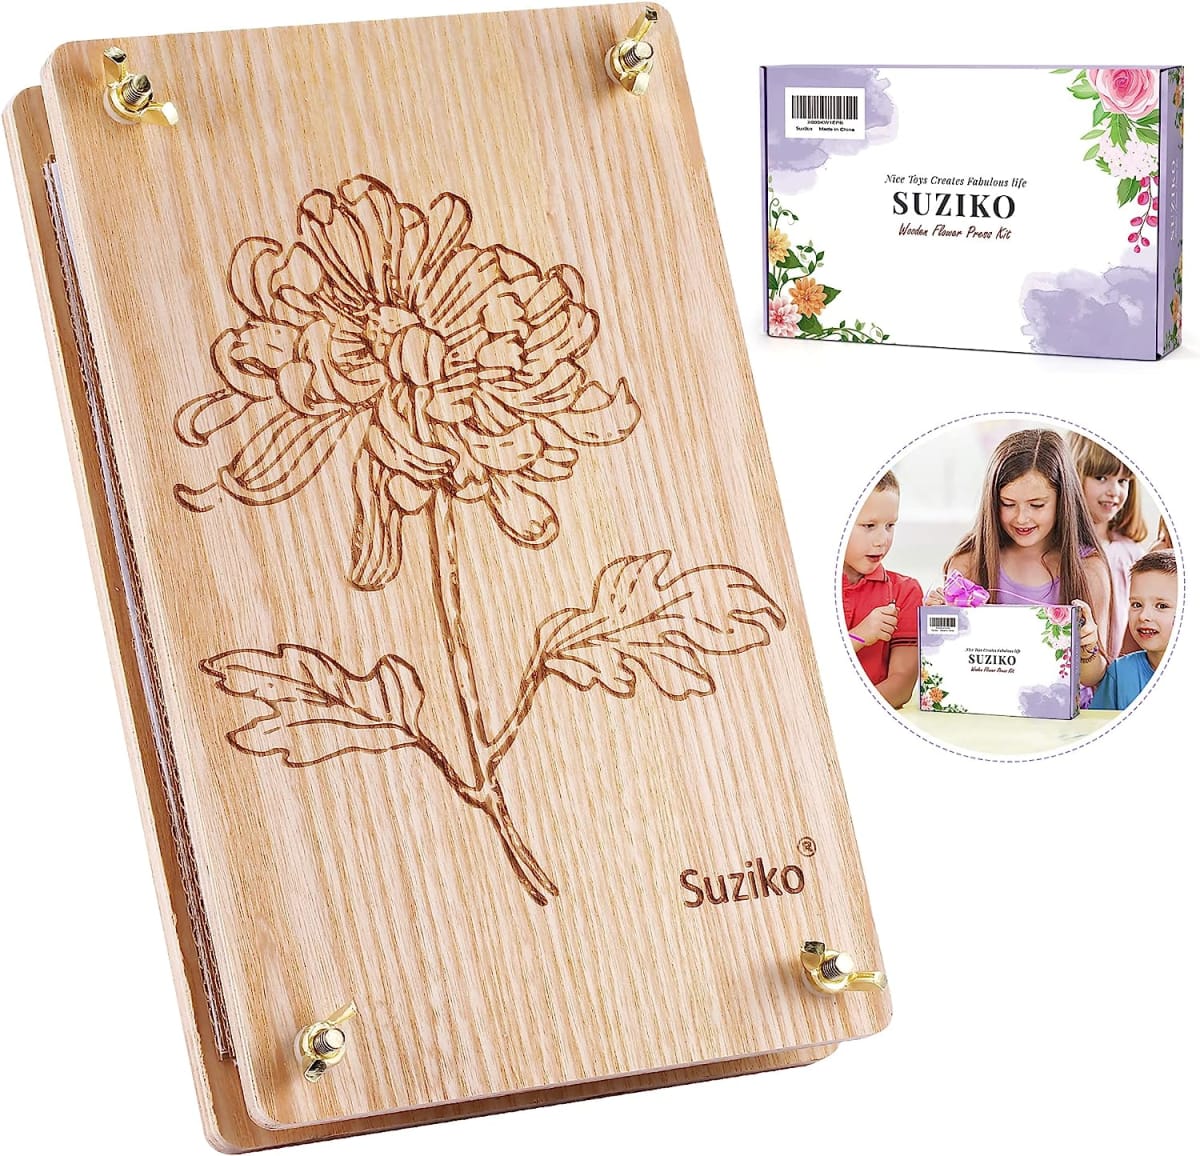 Suziko Flower Press Kit